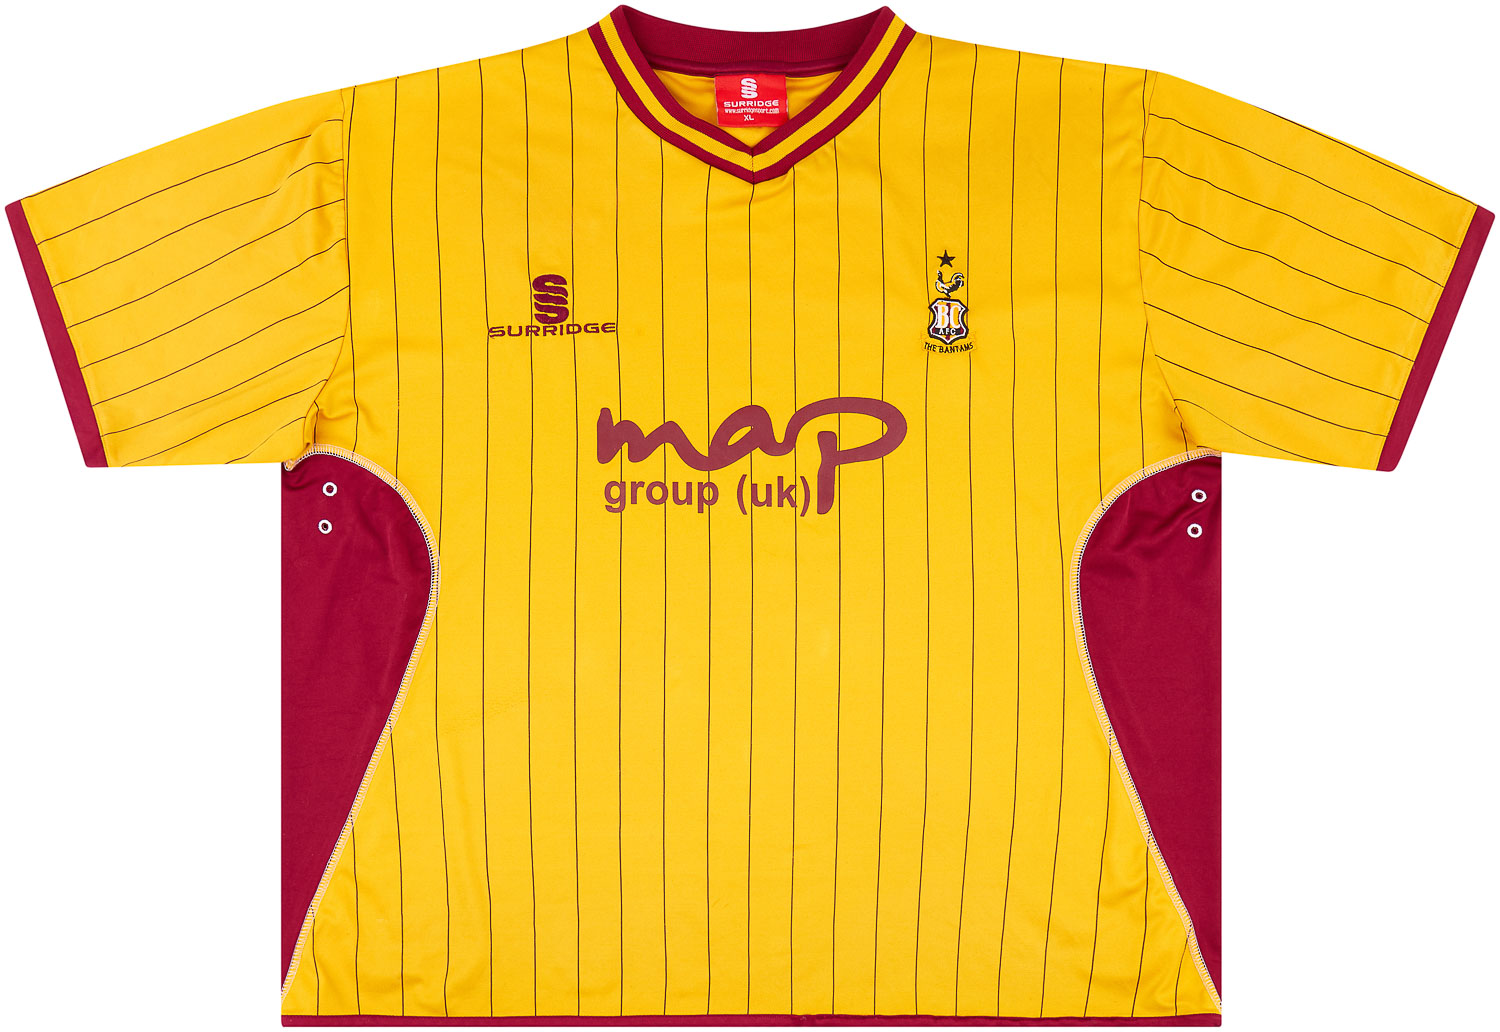 2010-11 Bradford City Home Shirt - 6/10 - ()